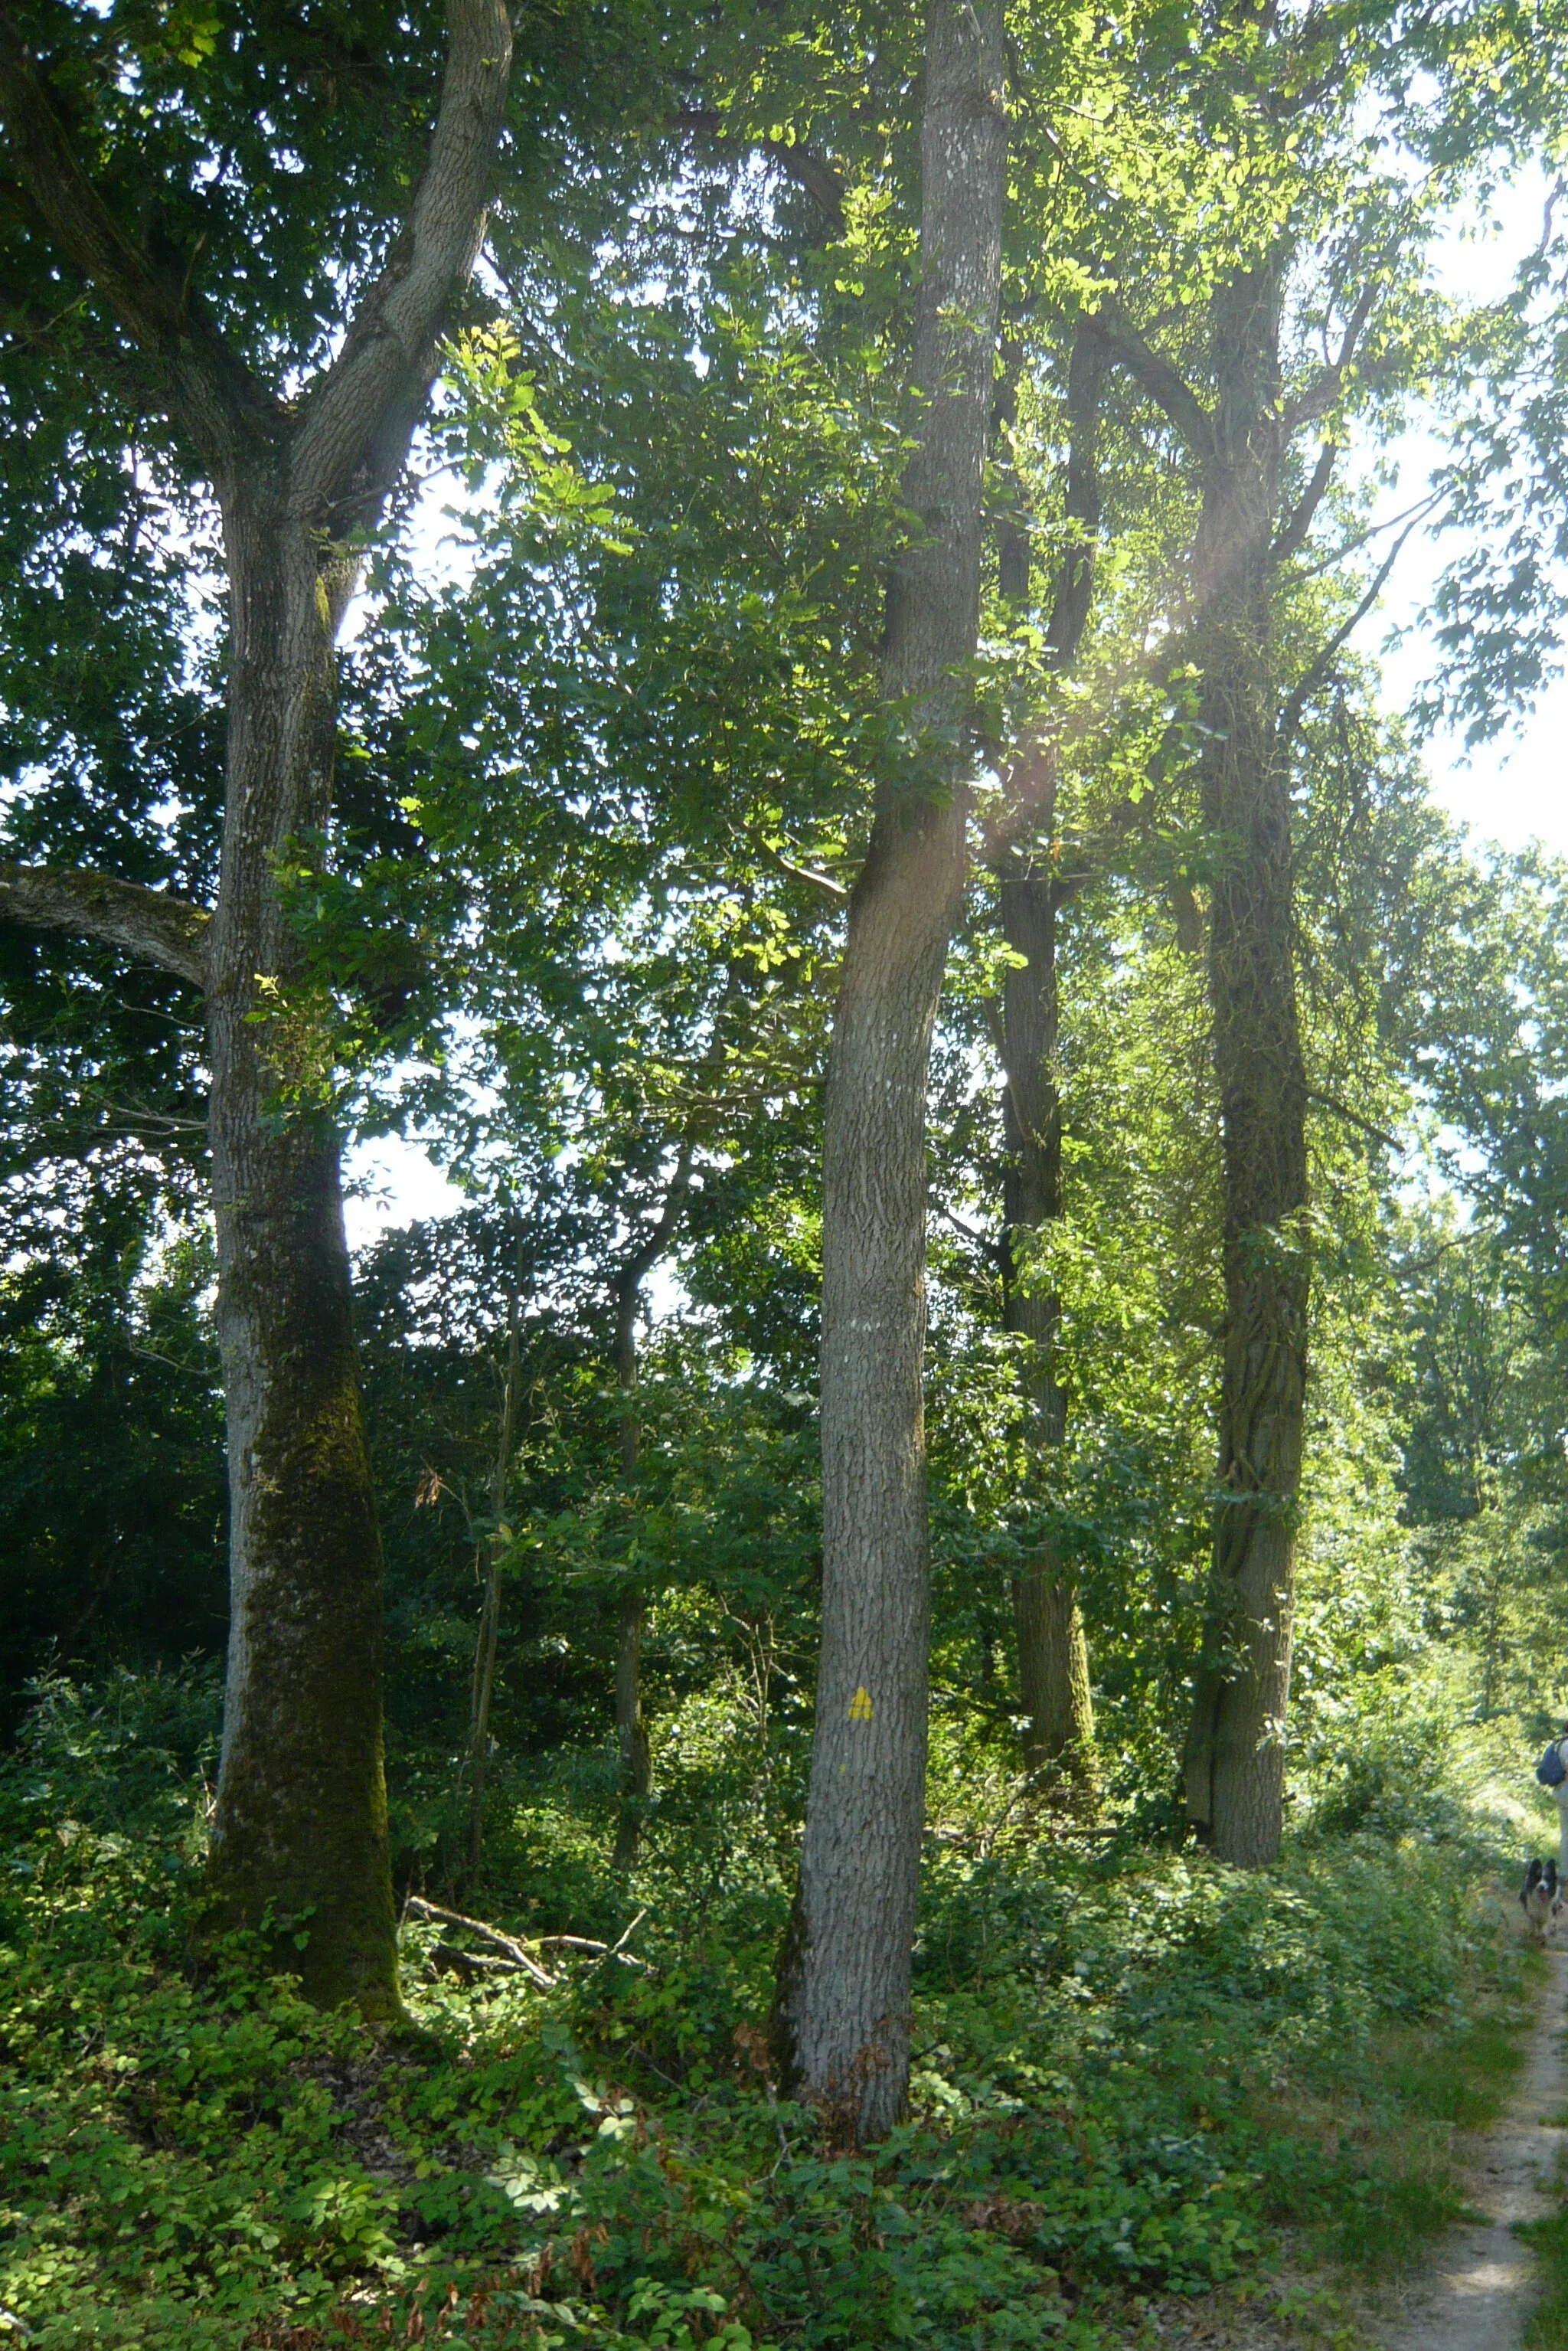 Photo showing: Sur la route de Dreux (D928), à la recherche des Quatre Frères de Bigeonnette, forêt de Châteauneuf-en-Thymerais, Eure-et-loir (France).